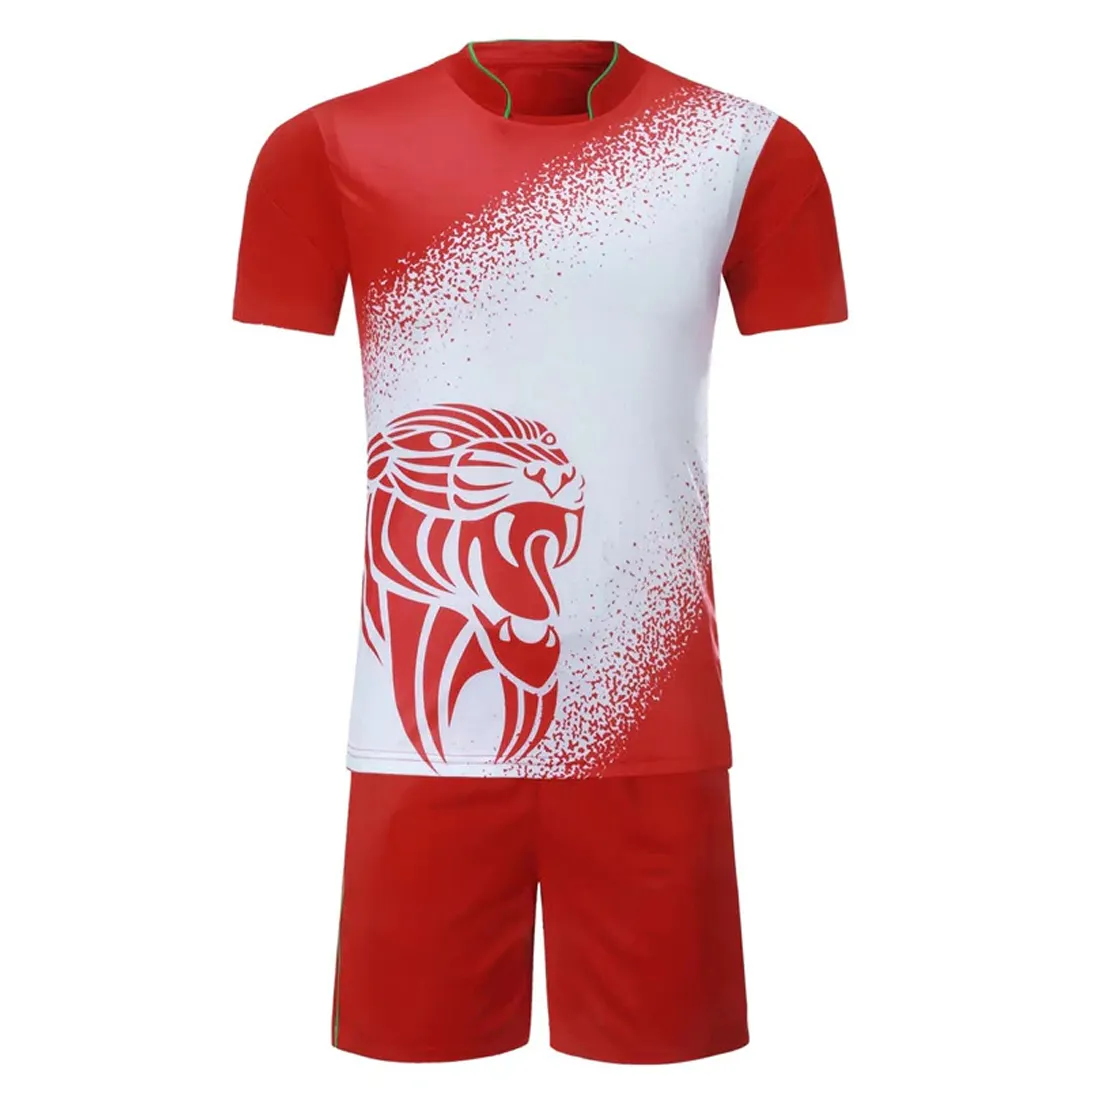 Recién lanzado, fabricación de camisetas transpirables, diseño OEM para ventas en línea de uniformes de equipos de fútbol